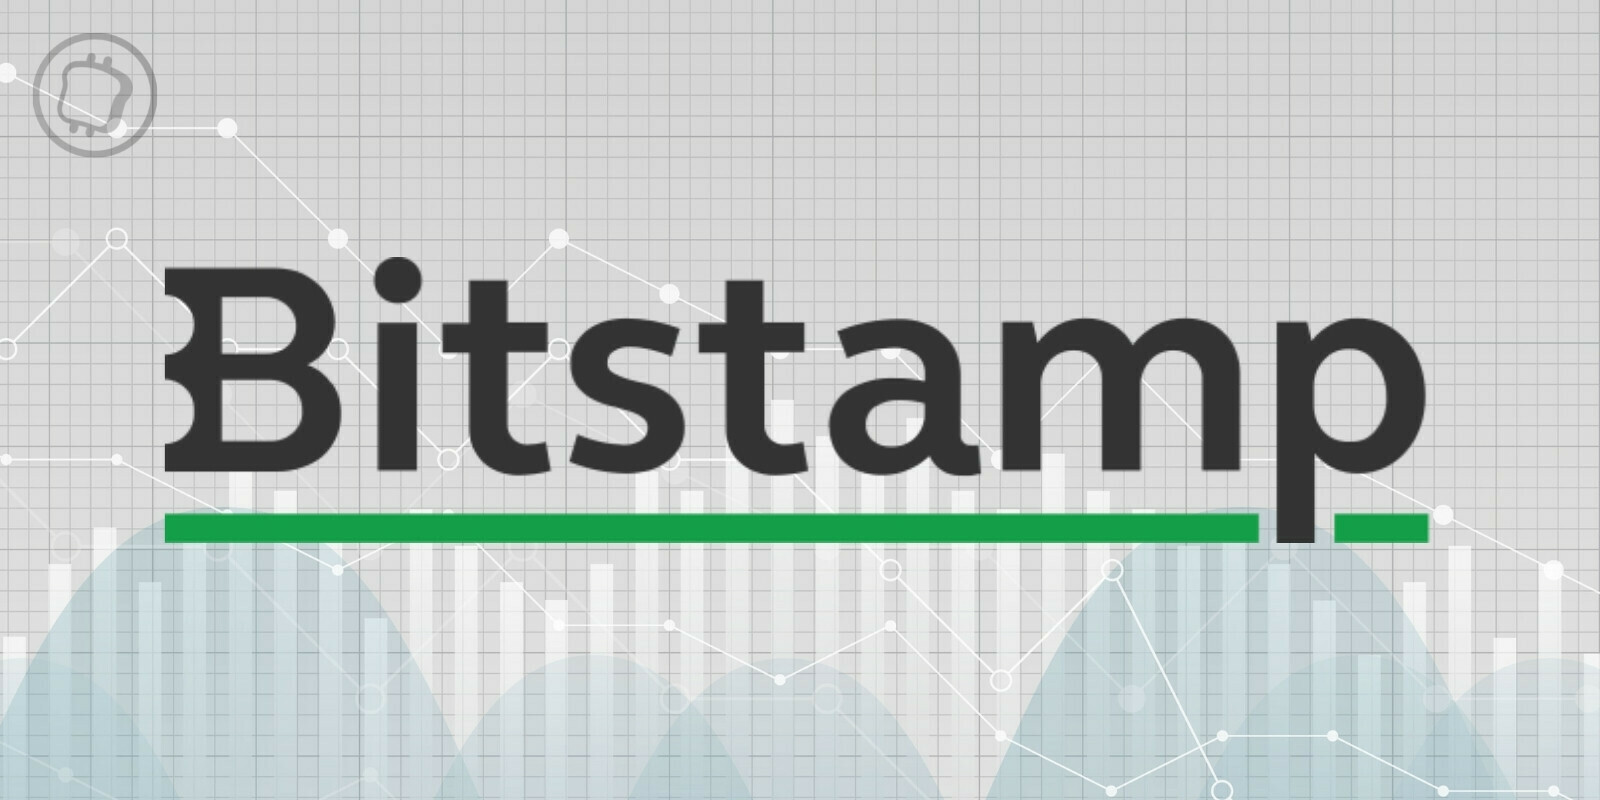 L'exchange Bitstamp commence à facturer des frais pour les comptes inactifs